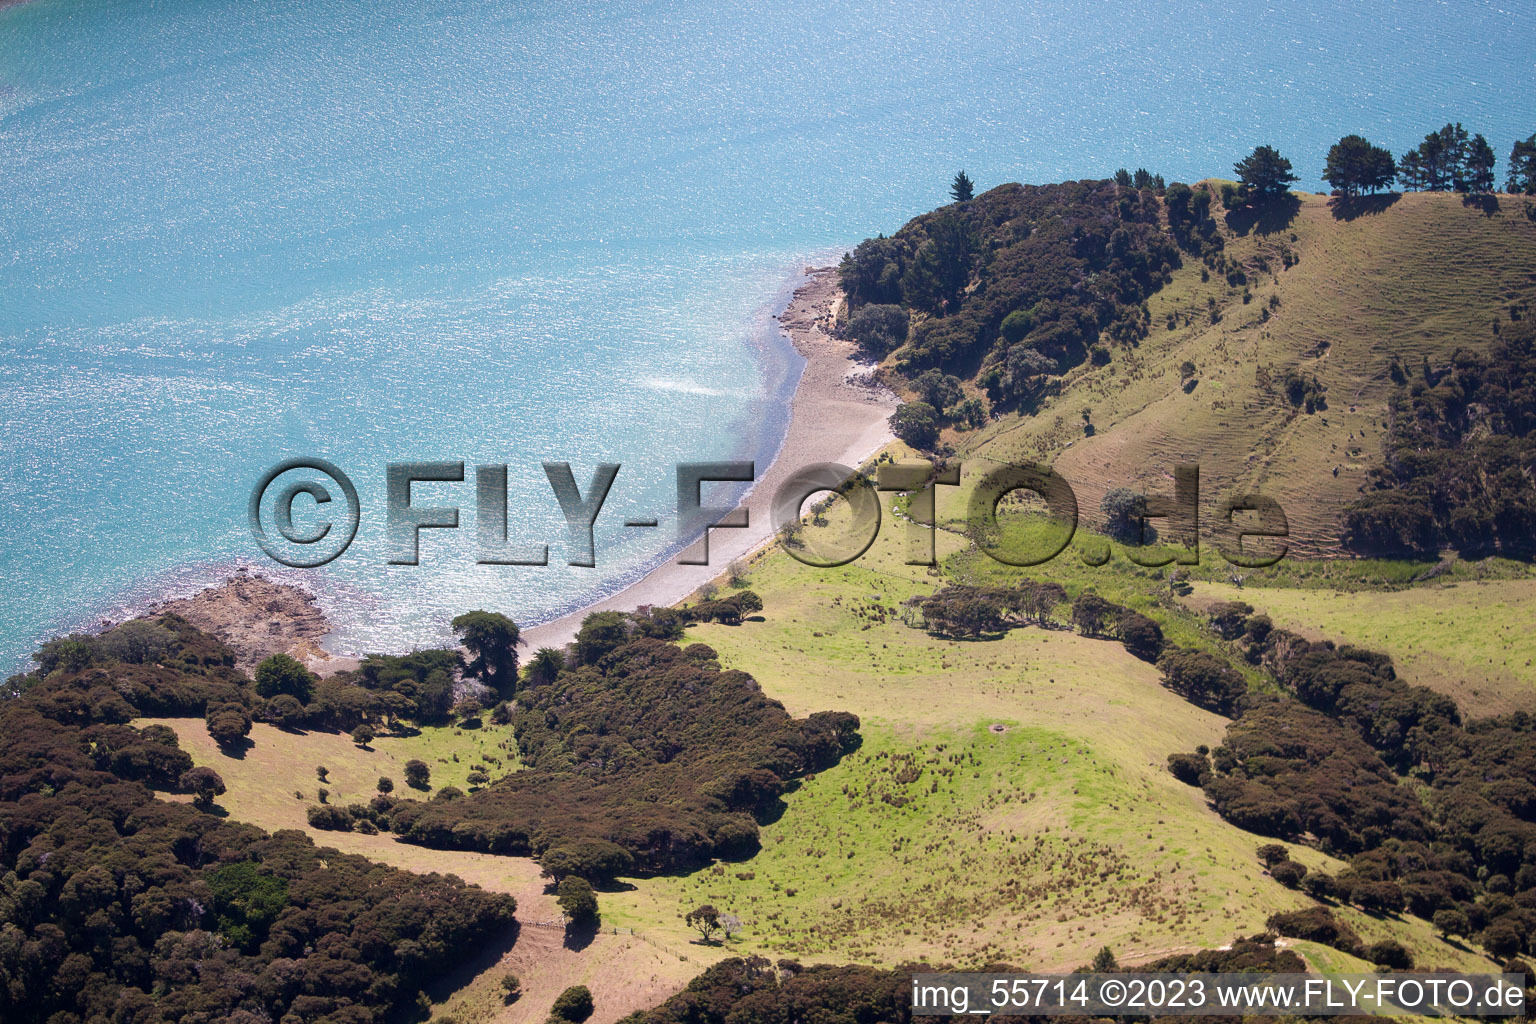 Coromandel dans le département Waïkato, Nouvelle-Zélande du point de vue du drone